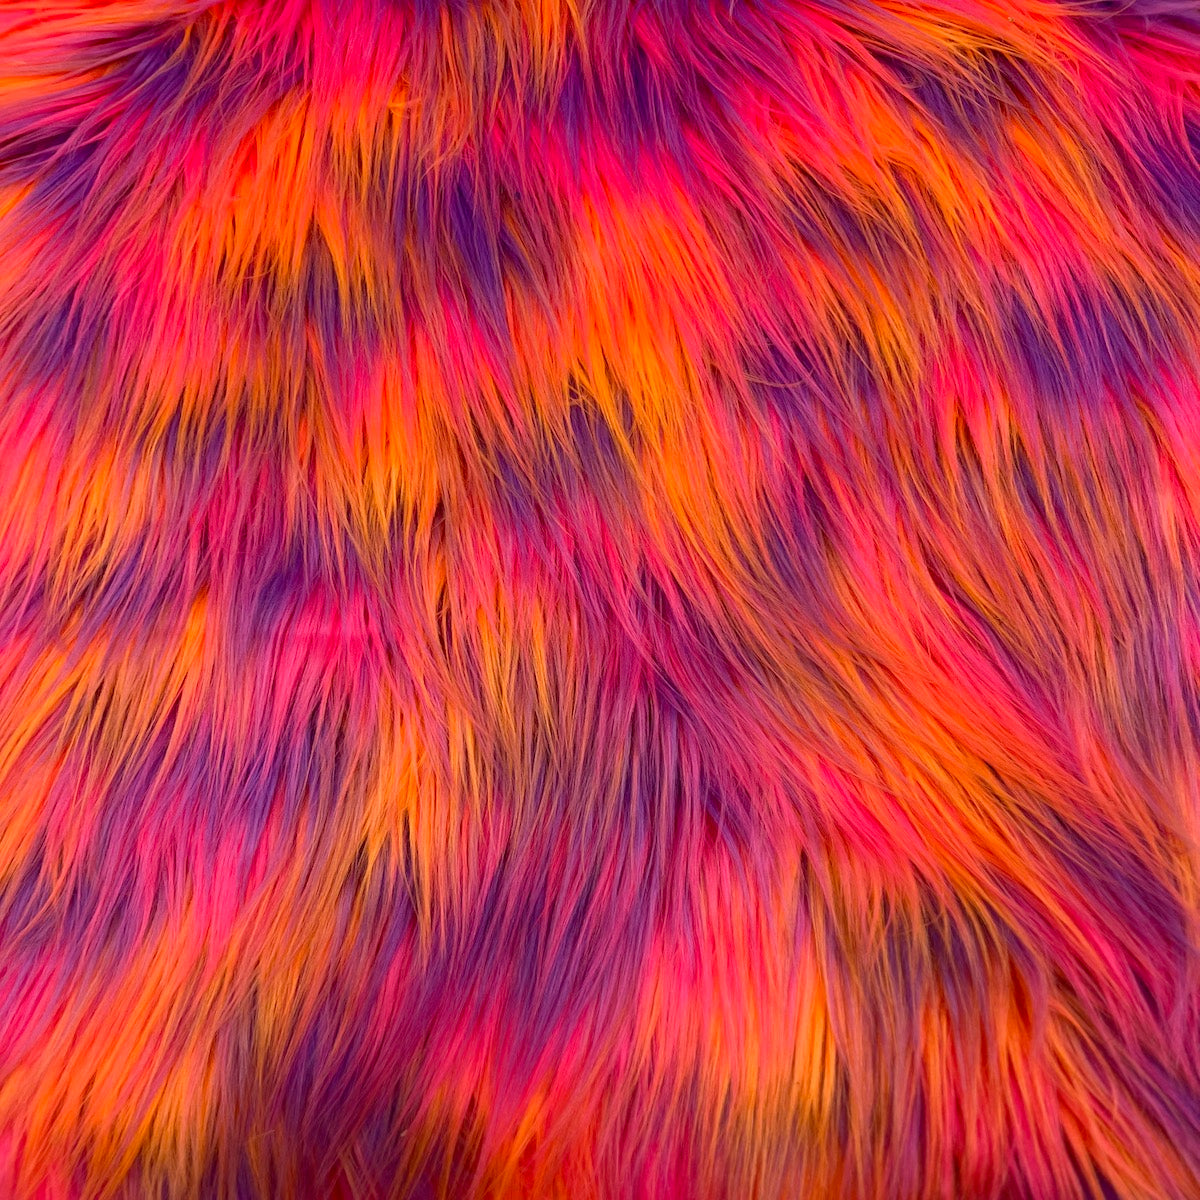 Tissu fausse fourrure à poils longs trois tons orange, rose, violet